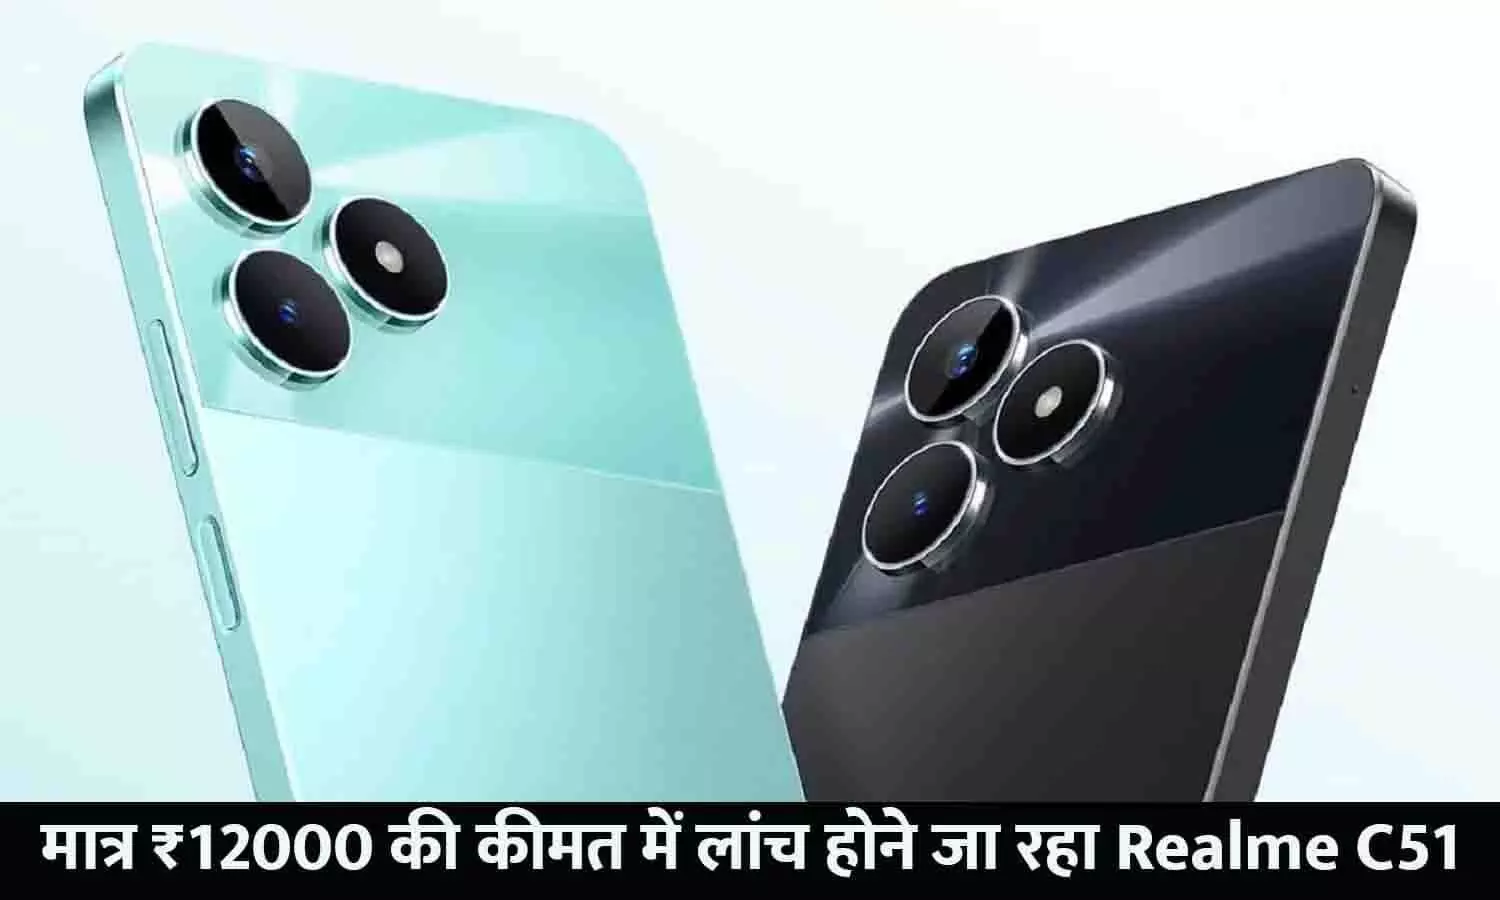 Realme C51 Price In India